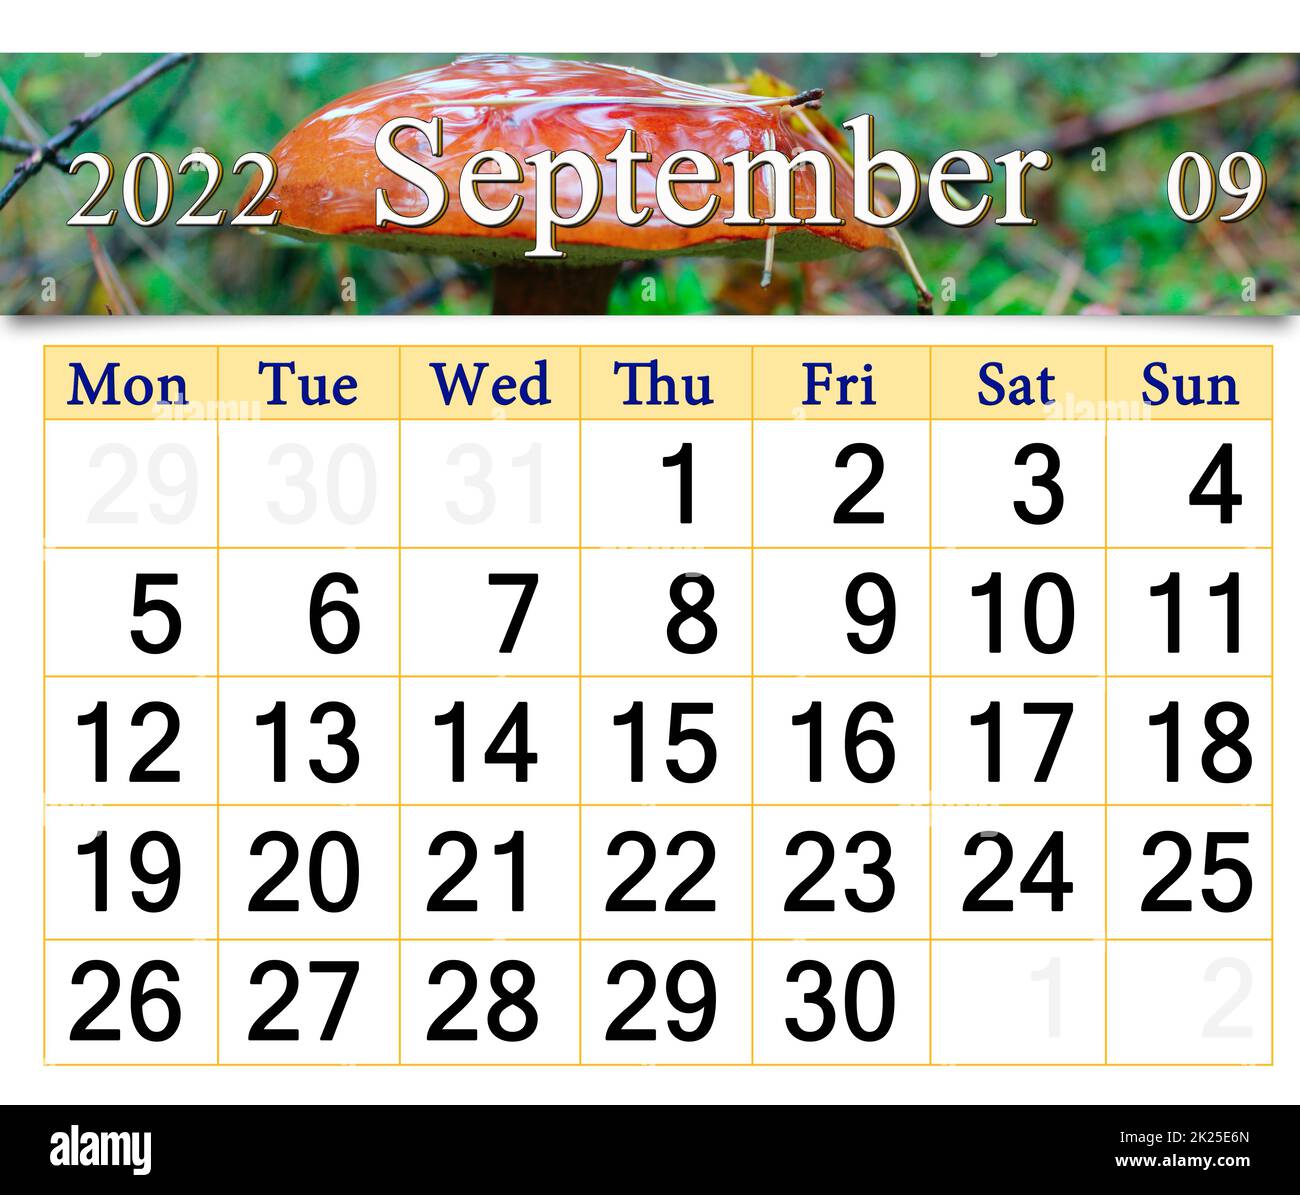 calendrier pour septembre 2022 avec image de la culture des champignons dans la forêt Banque D'Images